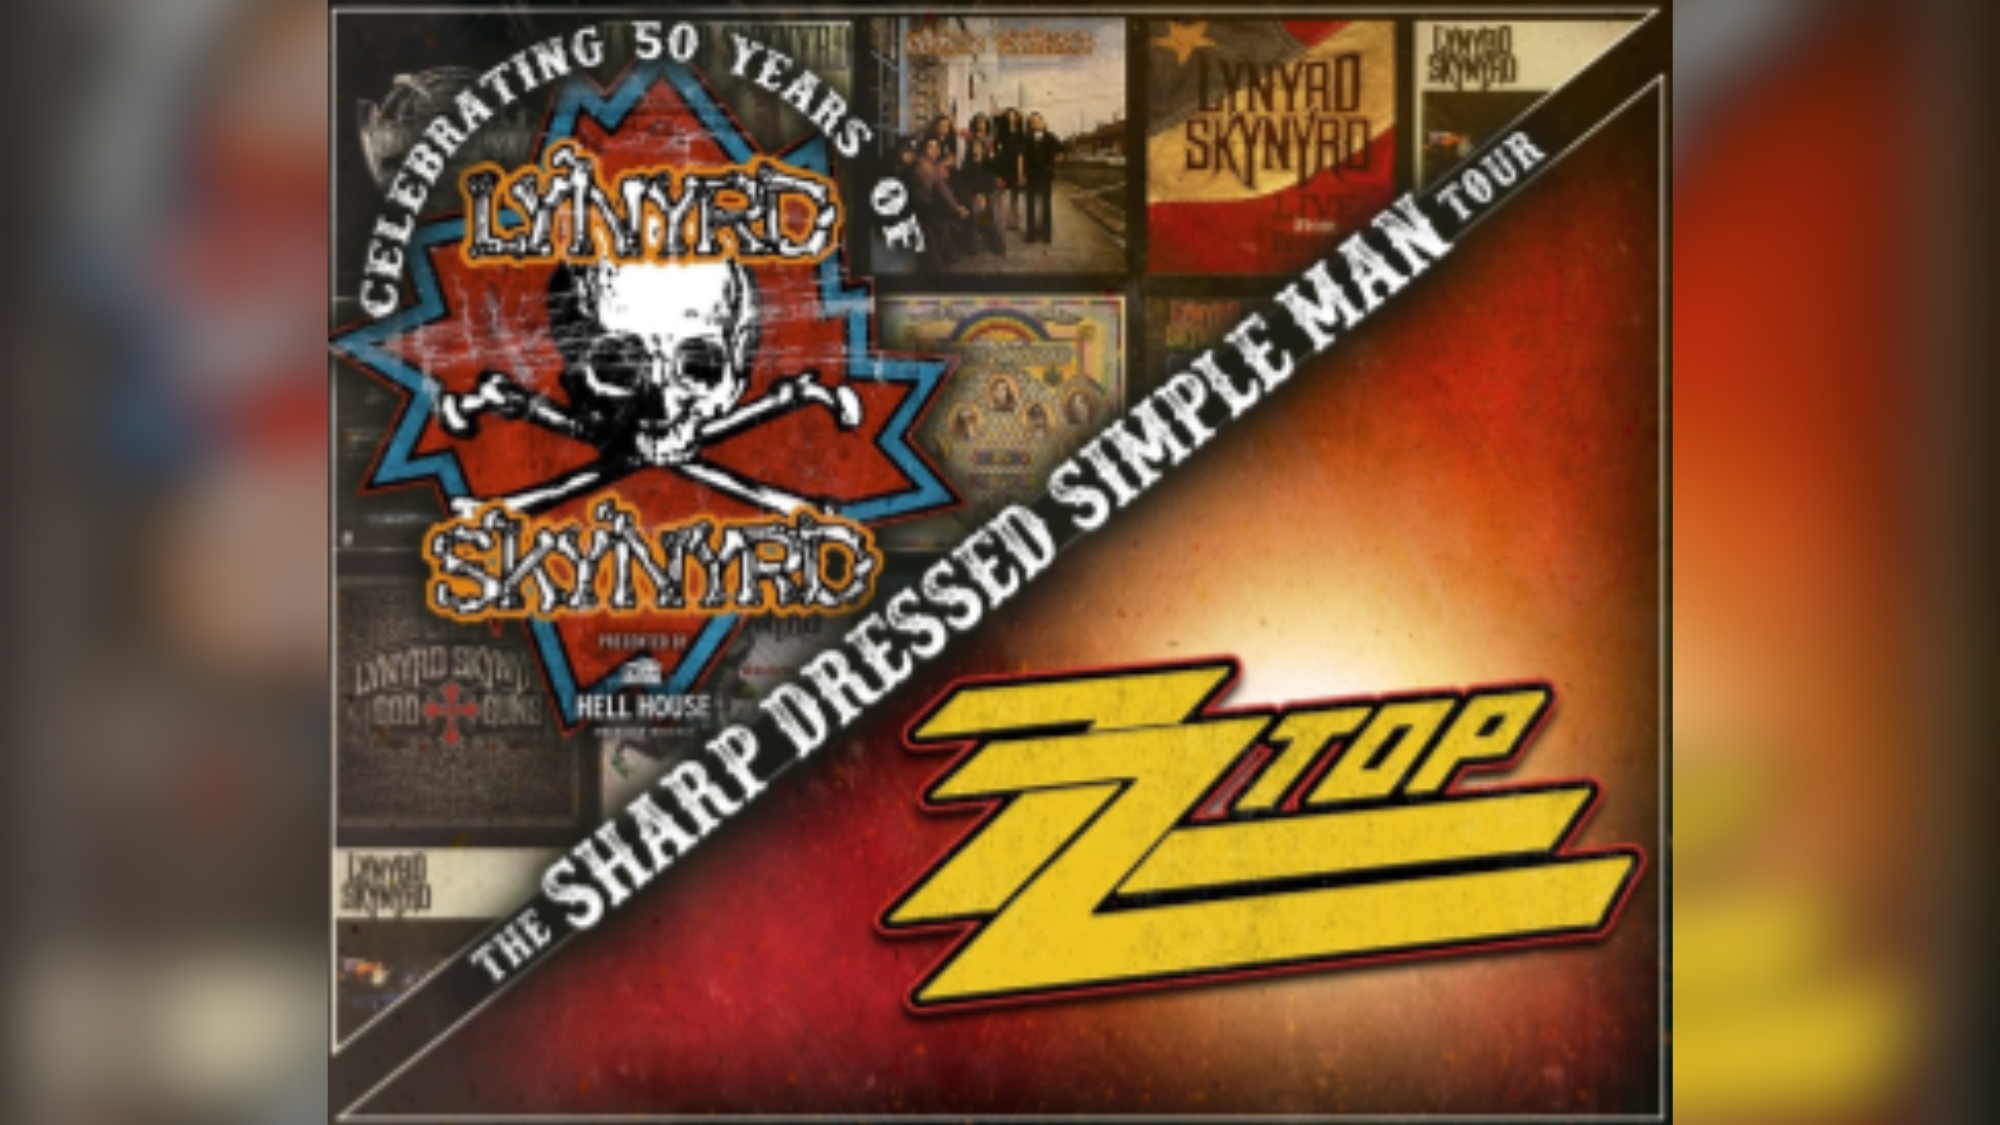 Lynyrd Skynyrd, ZZ Top announce joint show at MS Coast Coliseum